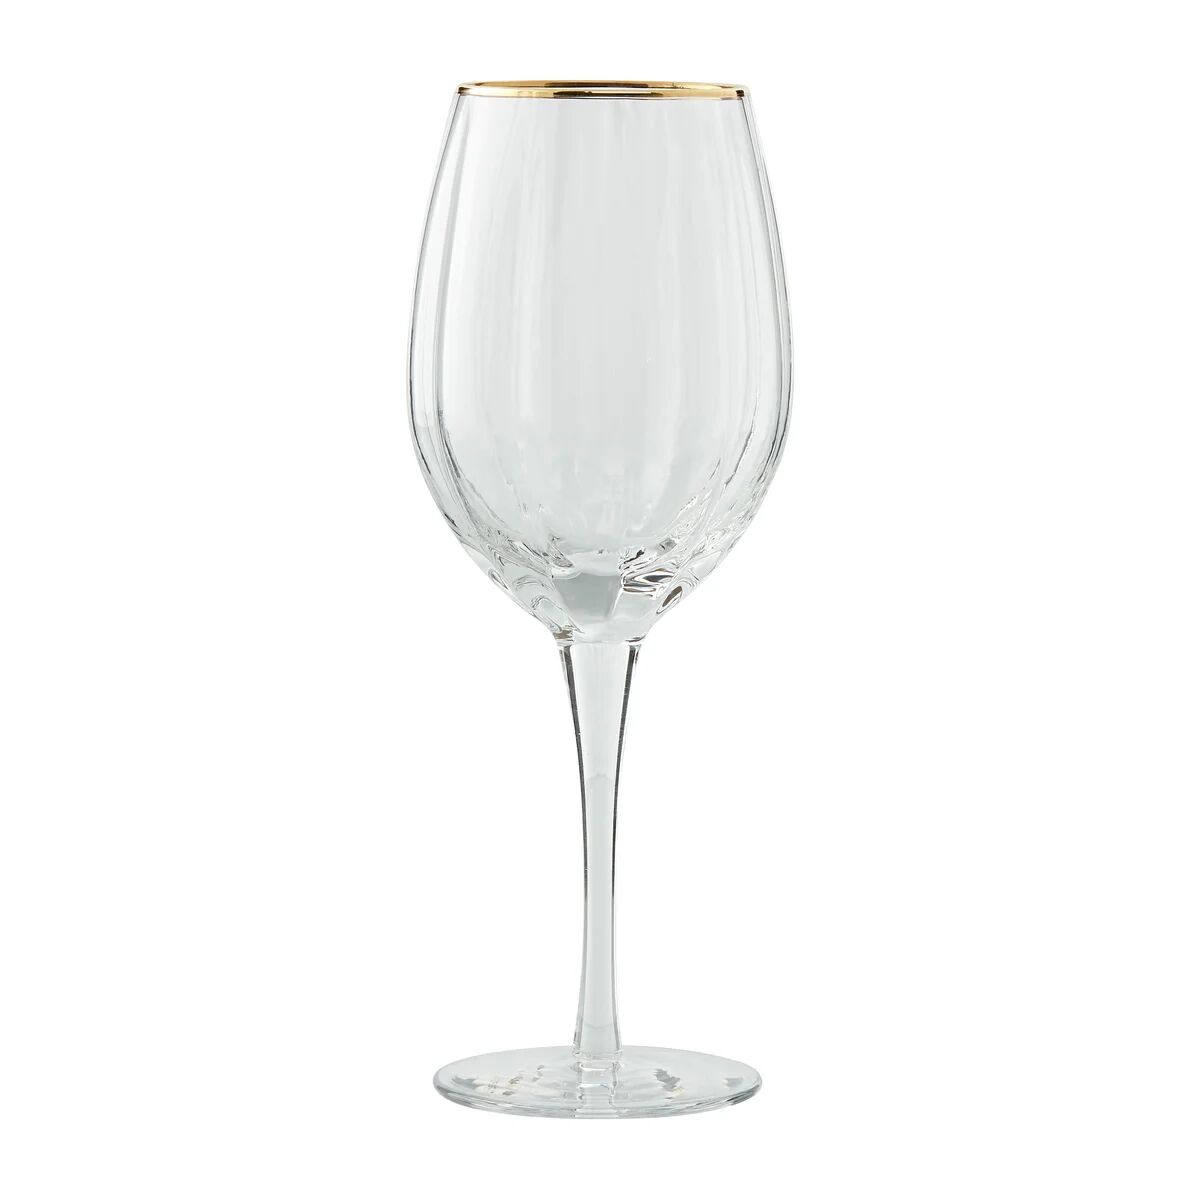 Lene Bjerre Claudine hvitvinsglass 45,5 cl Clear-light gold